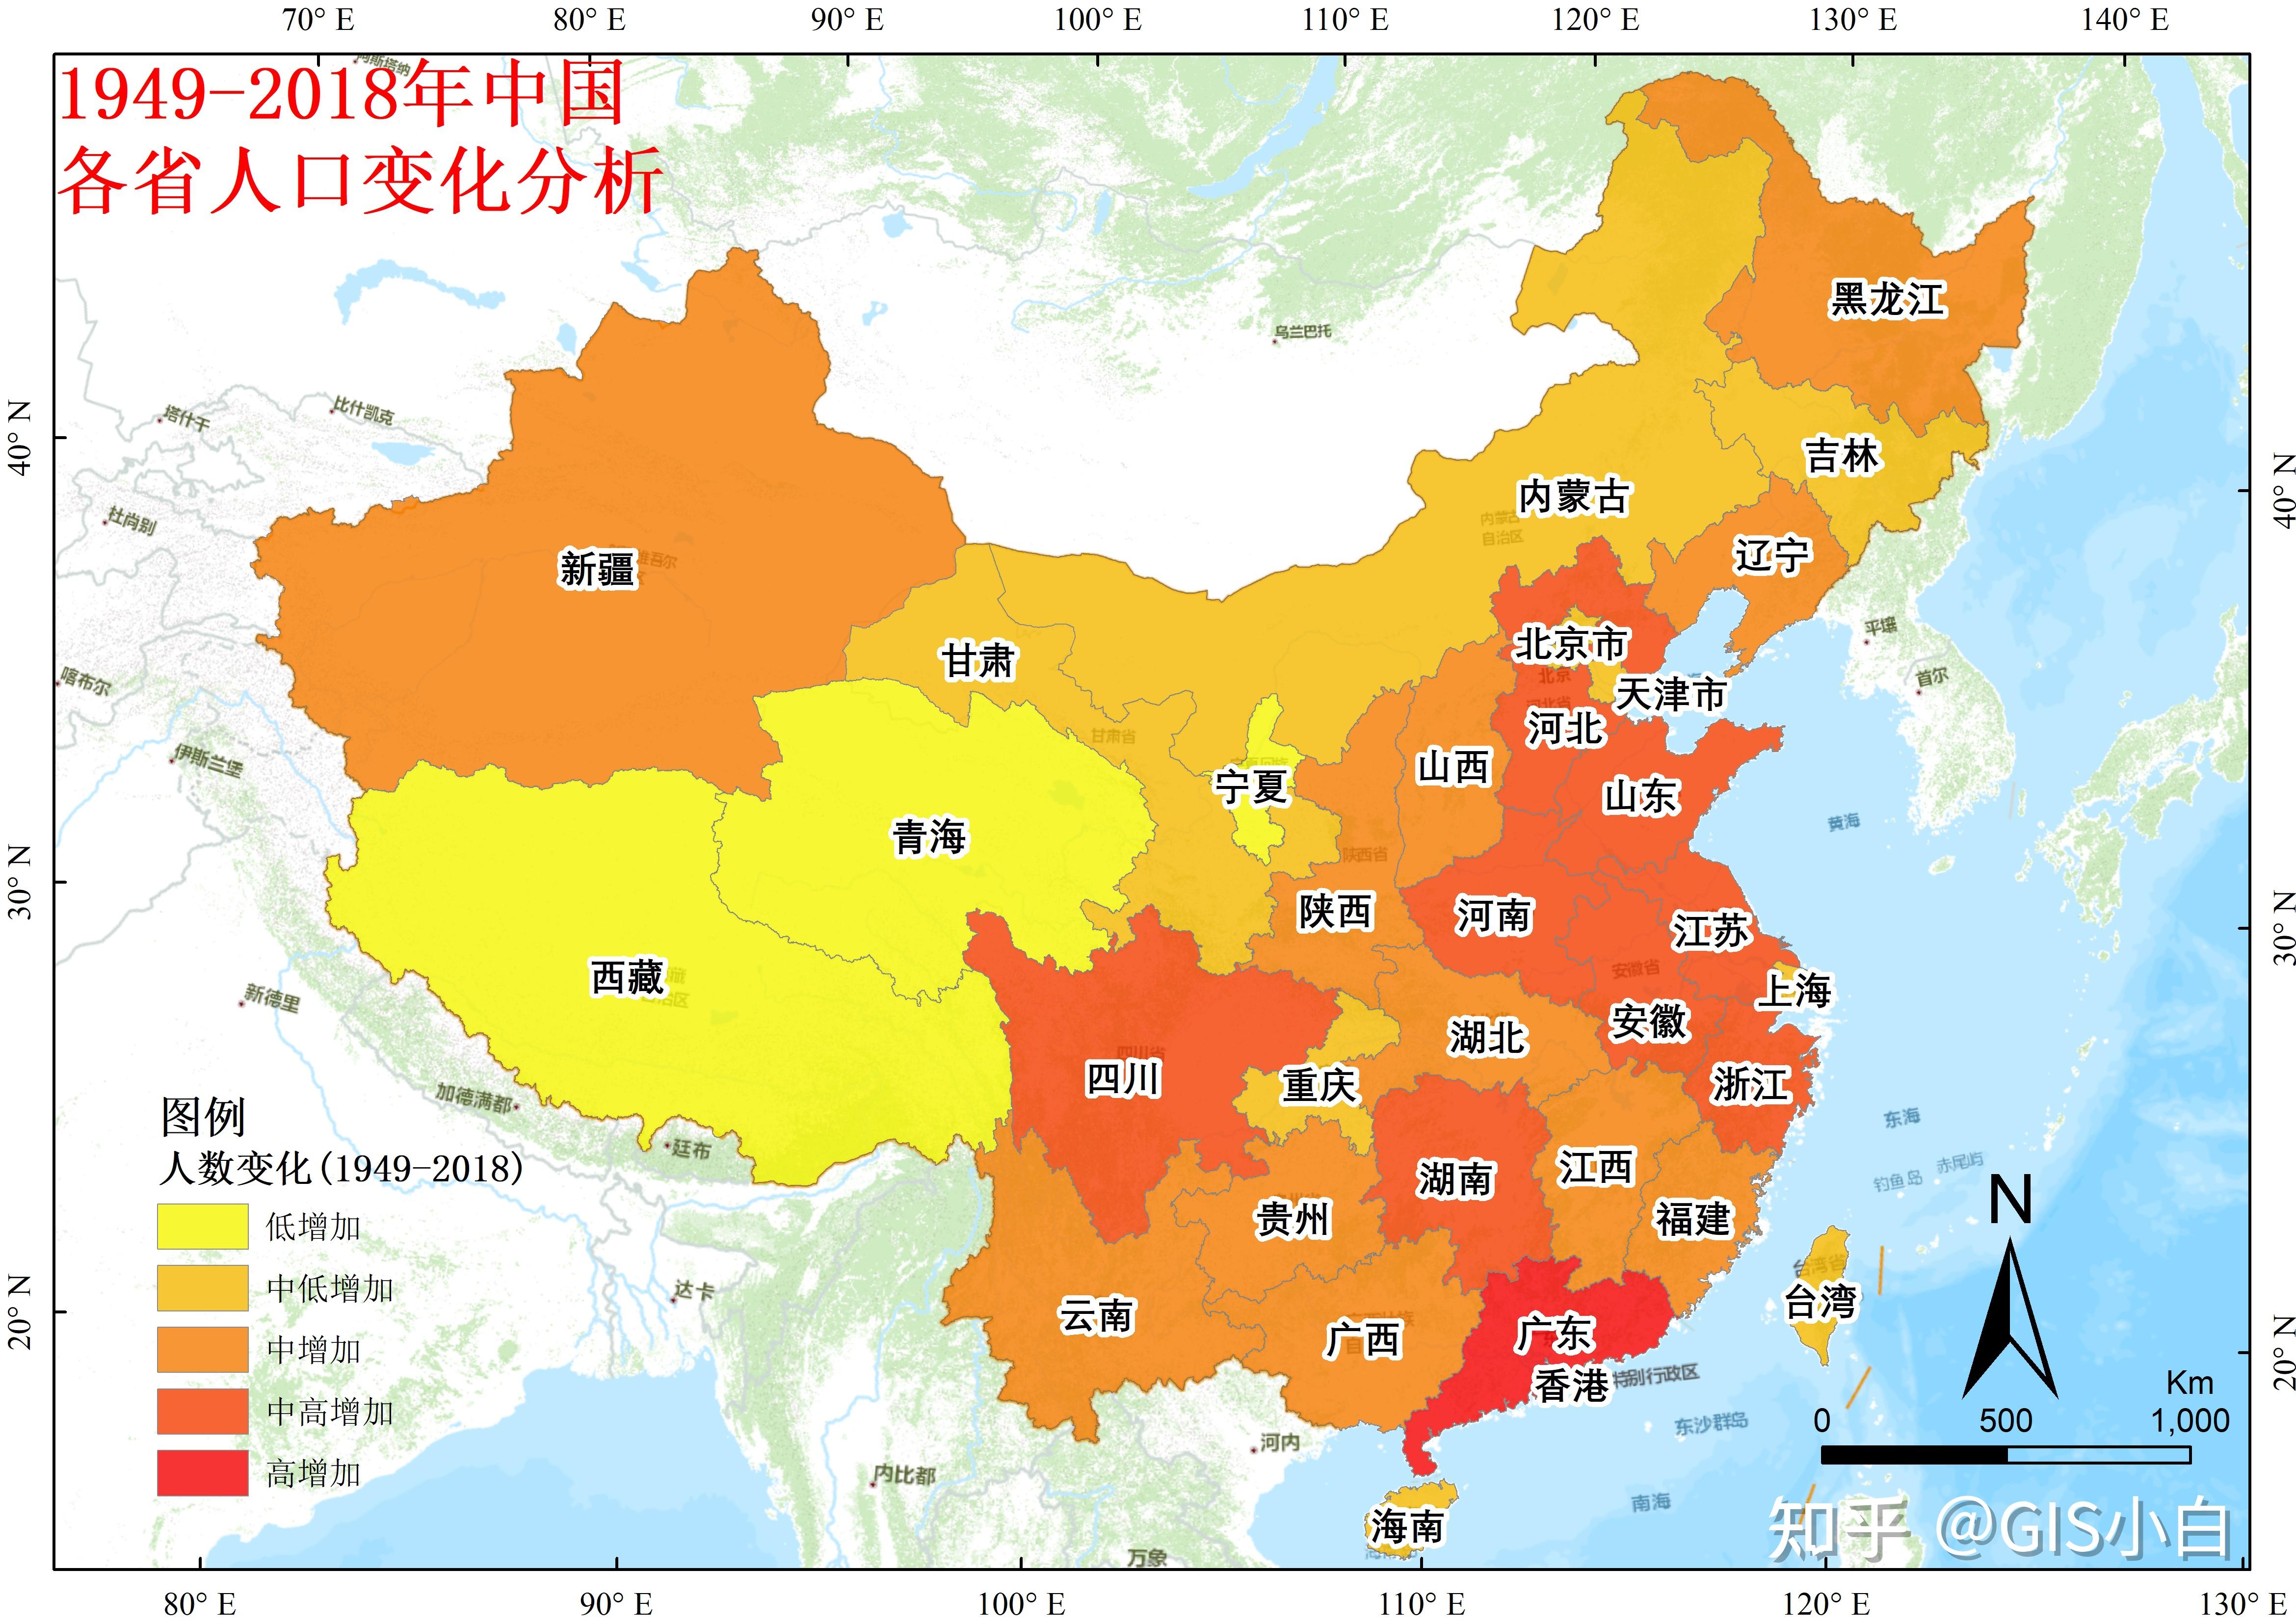 (71)专题图制作之历史地图(1)——中国人口增长与流动